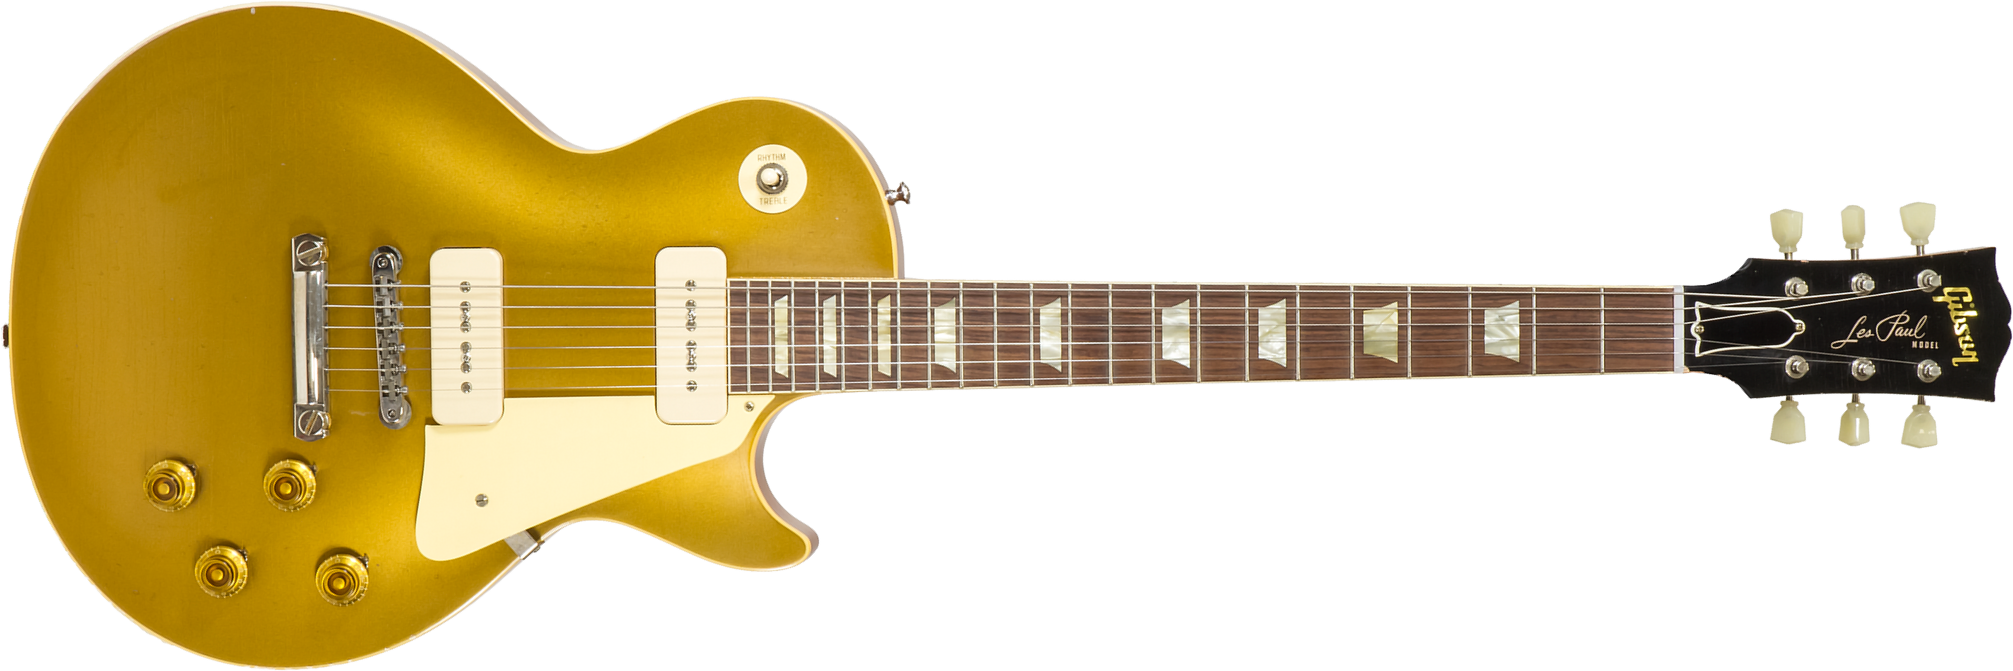 Gibson Custom Shop M2m Les Paul 1956 2h Ht Rw #63139 - Murphy Lab Light Aged Antique Gold - Guitarra eléctrica de corte único. - Main picture